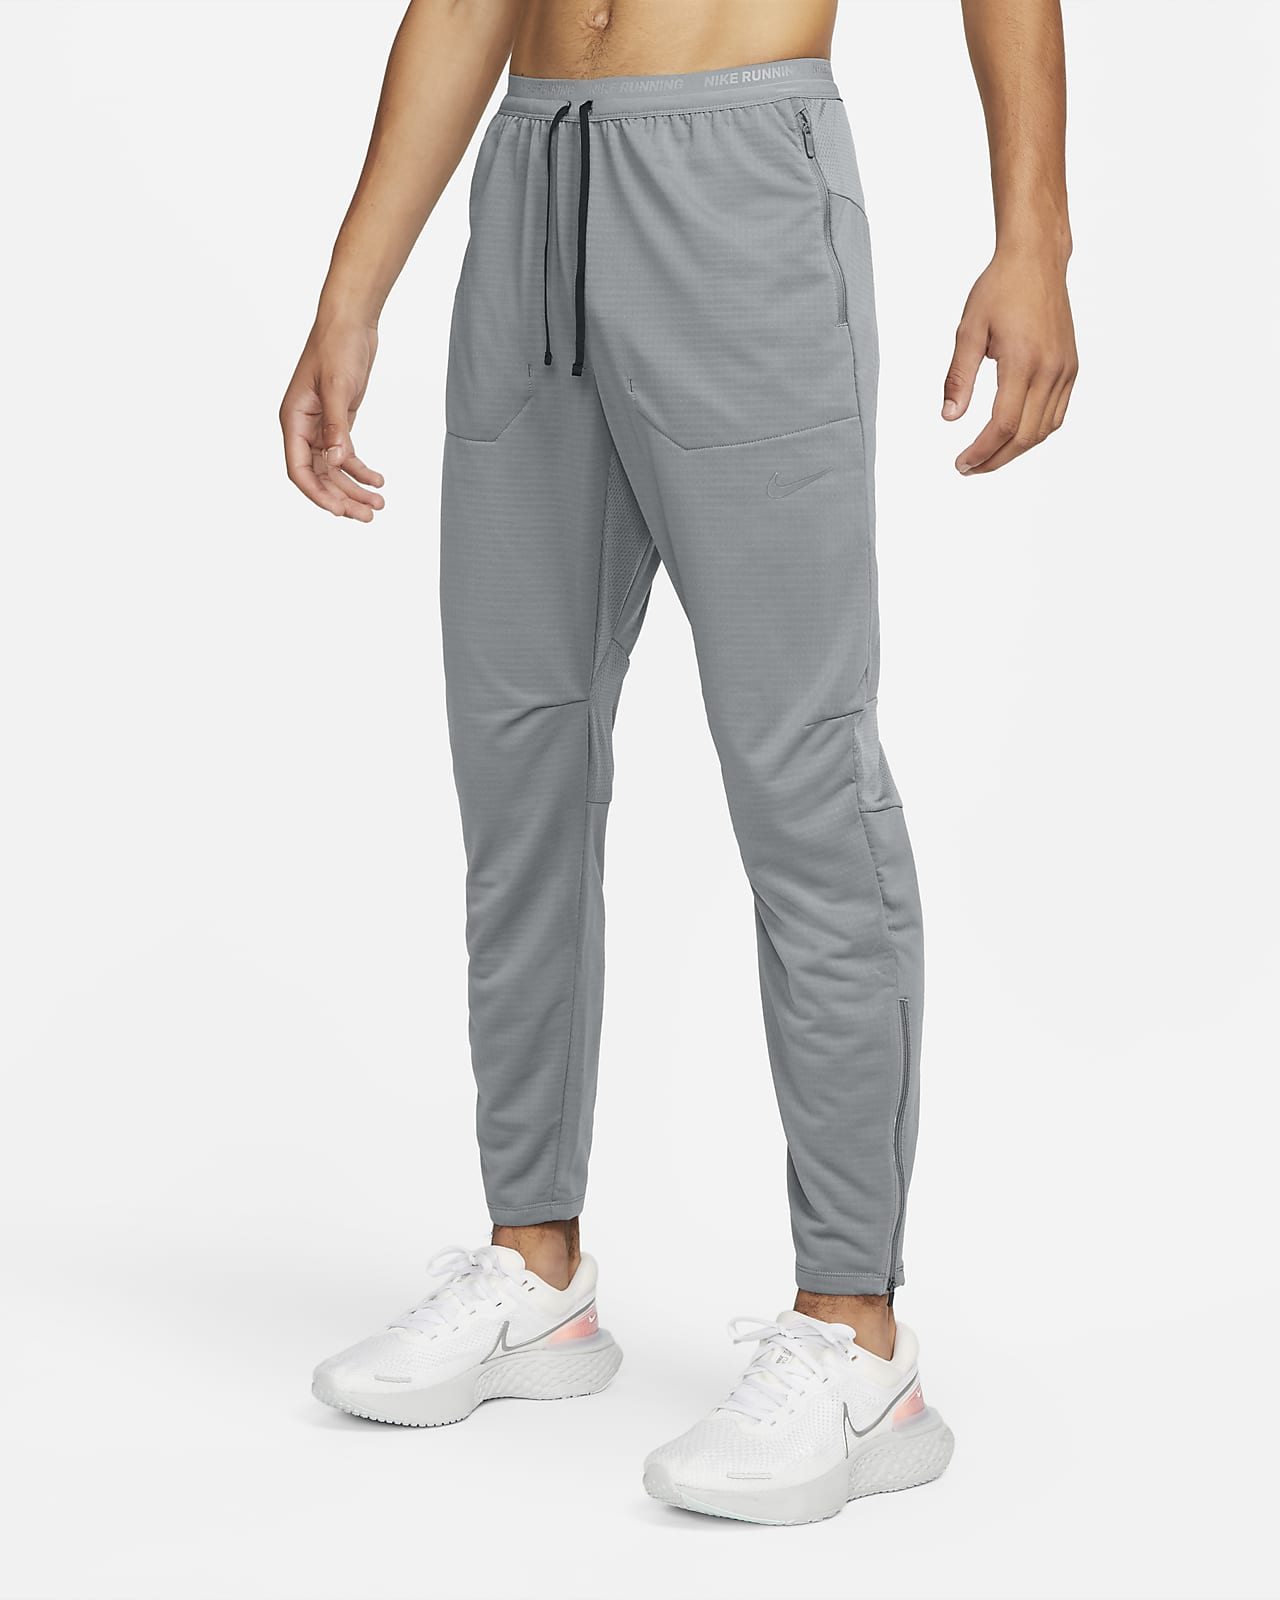 9 meilleures idées sur Pantalon gris homme  pantalon gris homme, vêtements  homme, pantalon gris